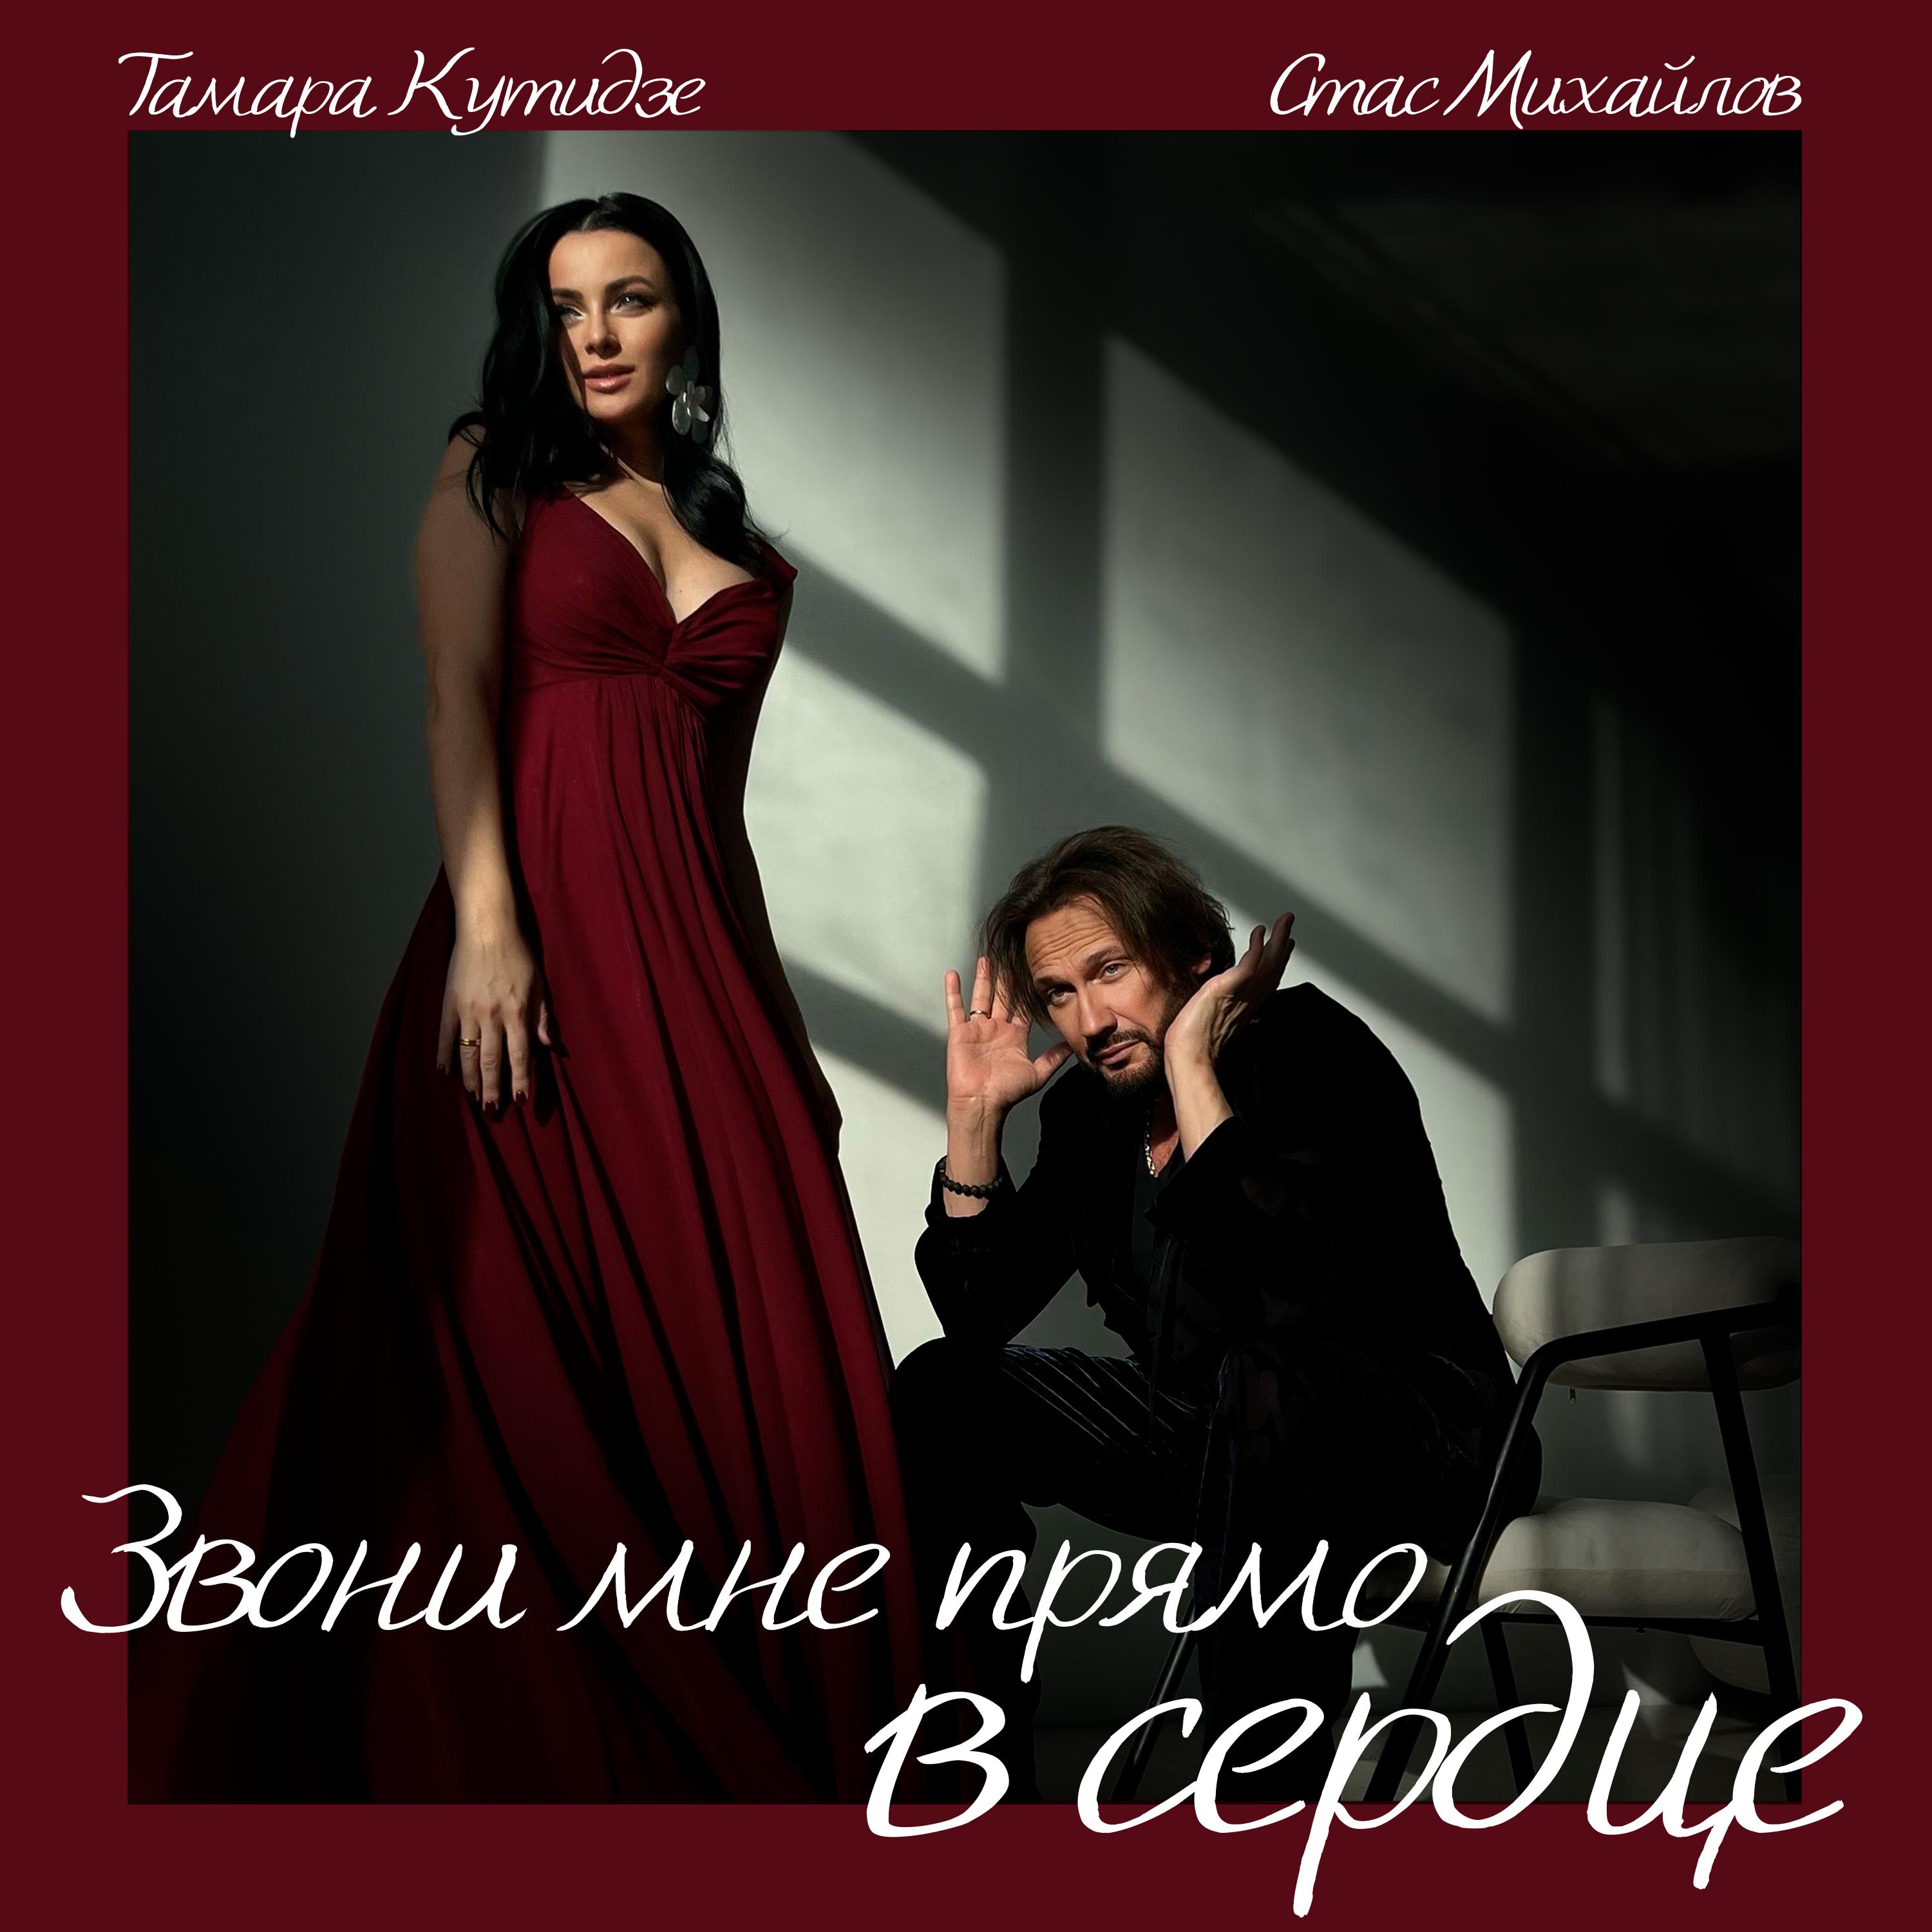 Альбом Звони мне прямо в сердце исполнителя Стас Михайлов, Тамара Кутидзе